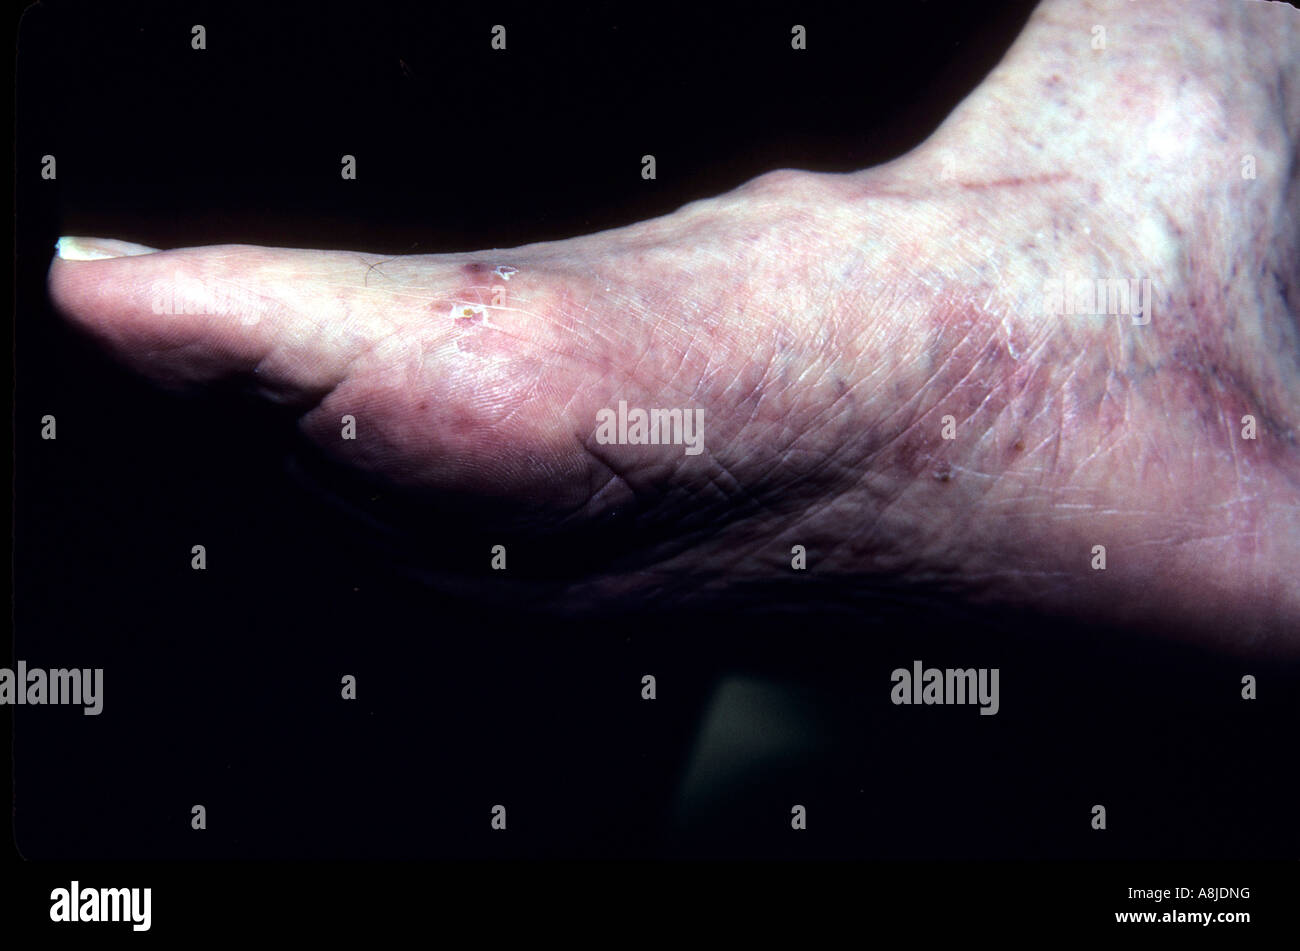 Fuß des Athleten. Die heilt, Sohlen und Seiten der Fuß zeigen eine schwache rosa Farbe mit feinen silbrig-weißen Schuppen bedeckt. Stockfoto